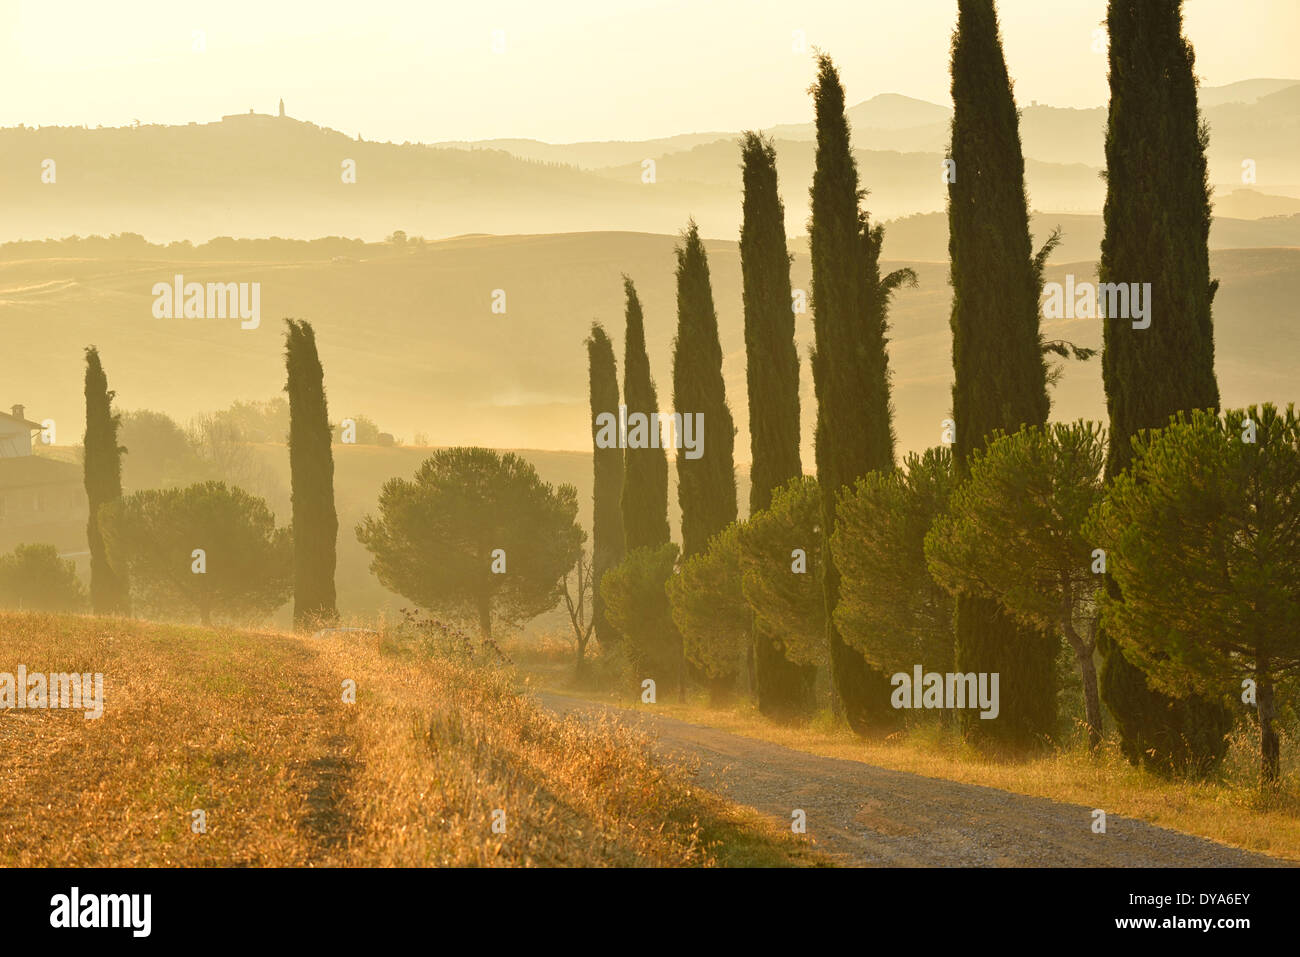 Europa, Italia, Toscana, provincia Siena niebla de la mañana paisaje toscano campo cultivo de árboles cipreses europeos, grava Foto de stock